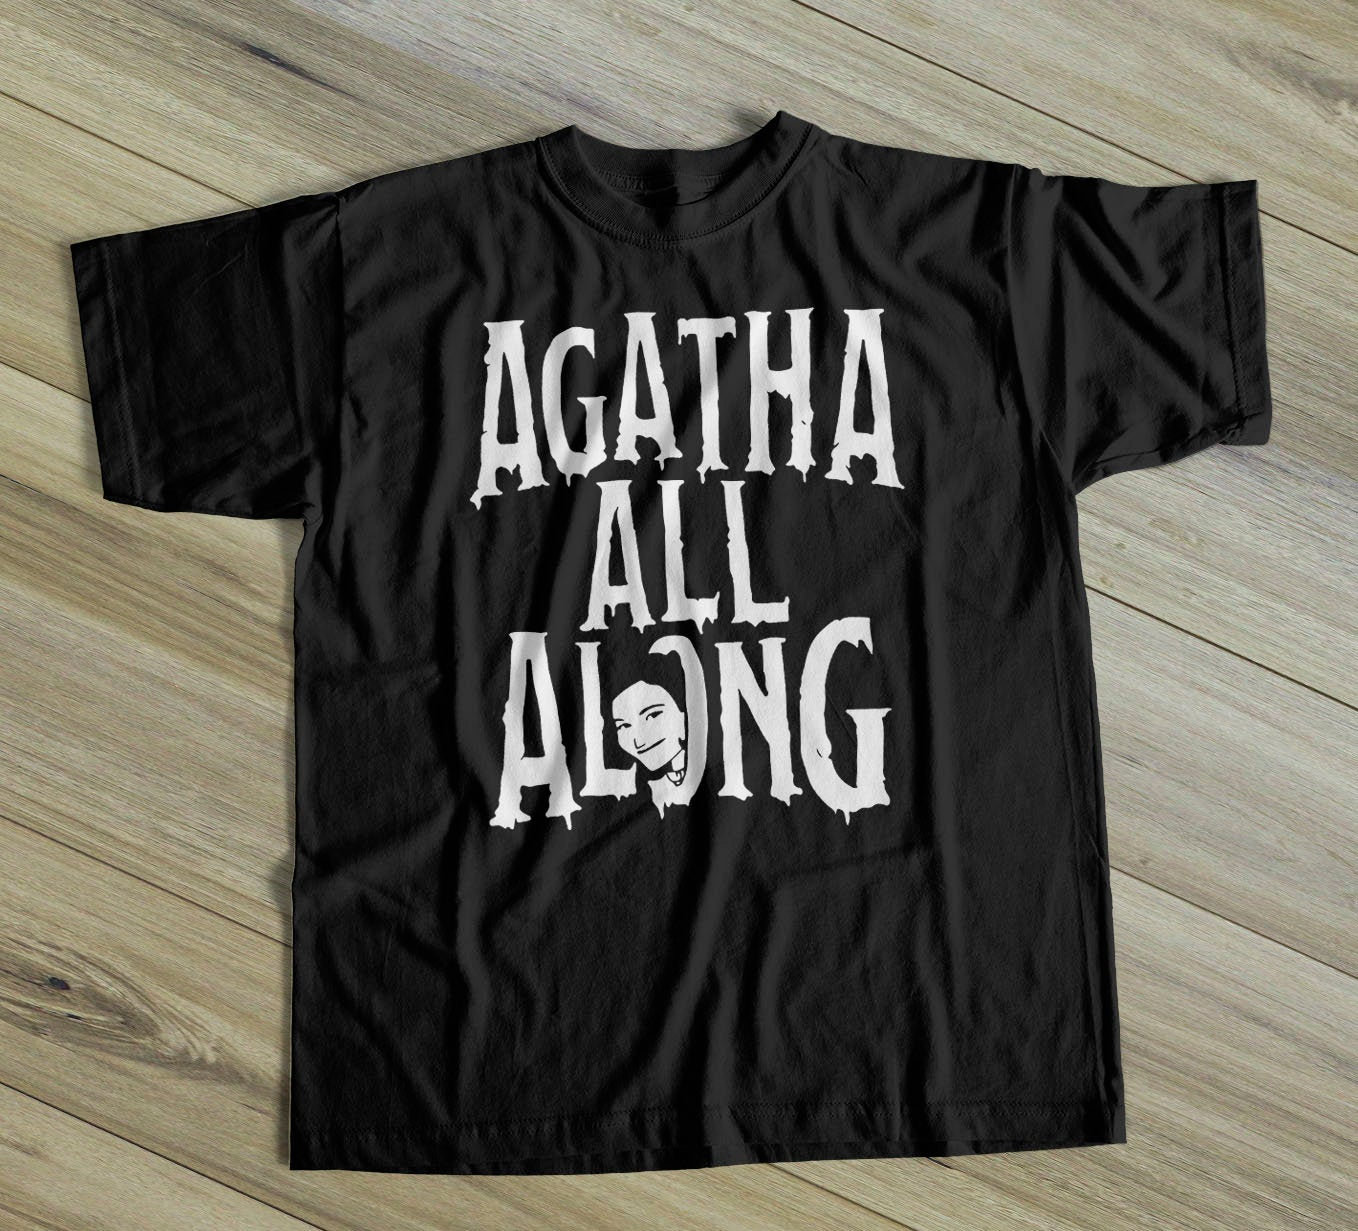 Agatha-harkness-shirt-agatha-all-along-wandavision-shirt-scarlet-witch-shirt-vision-shirt-avengers-shirt-wandavision-t-shirt-witch